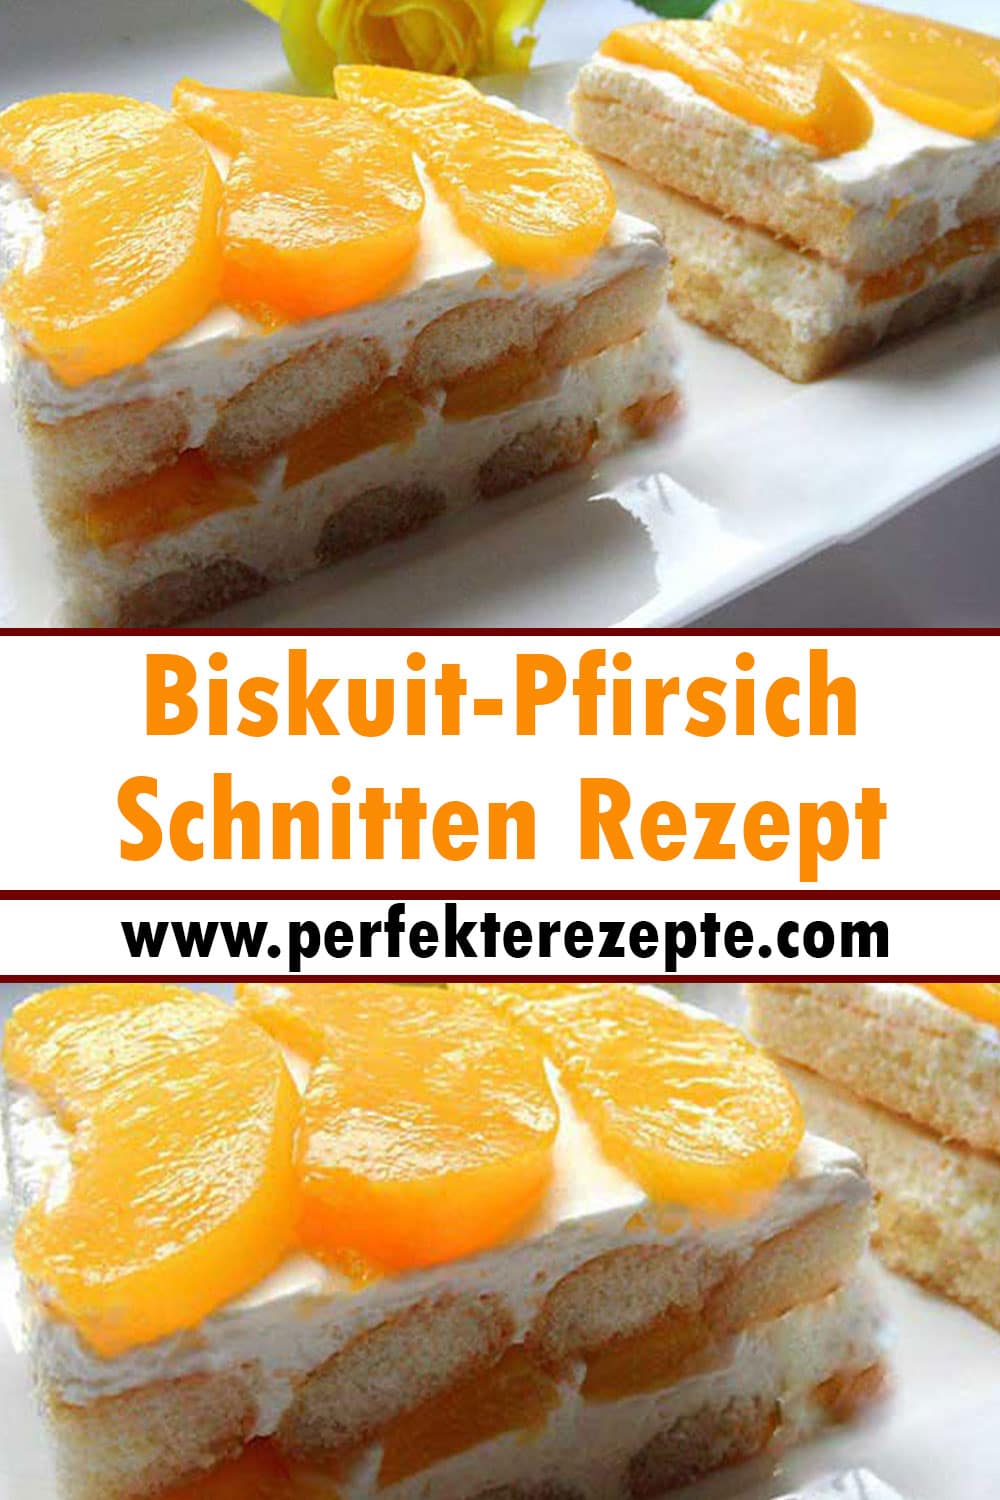 Biskuit-Pfirsich-Schnitten Rezept